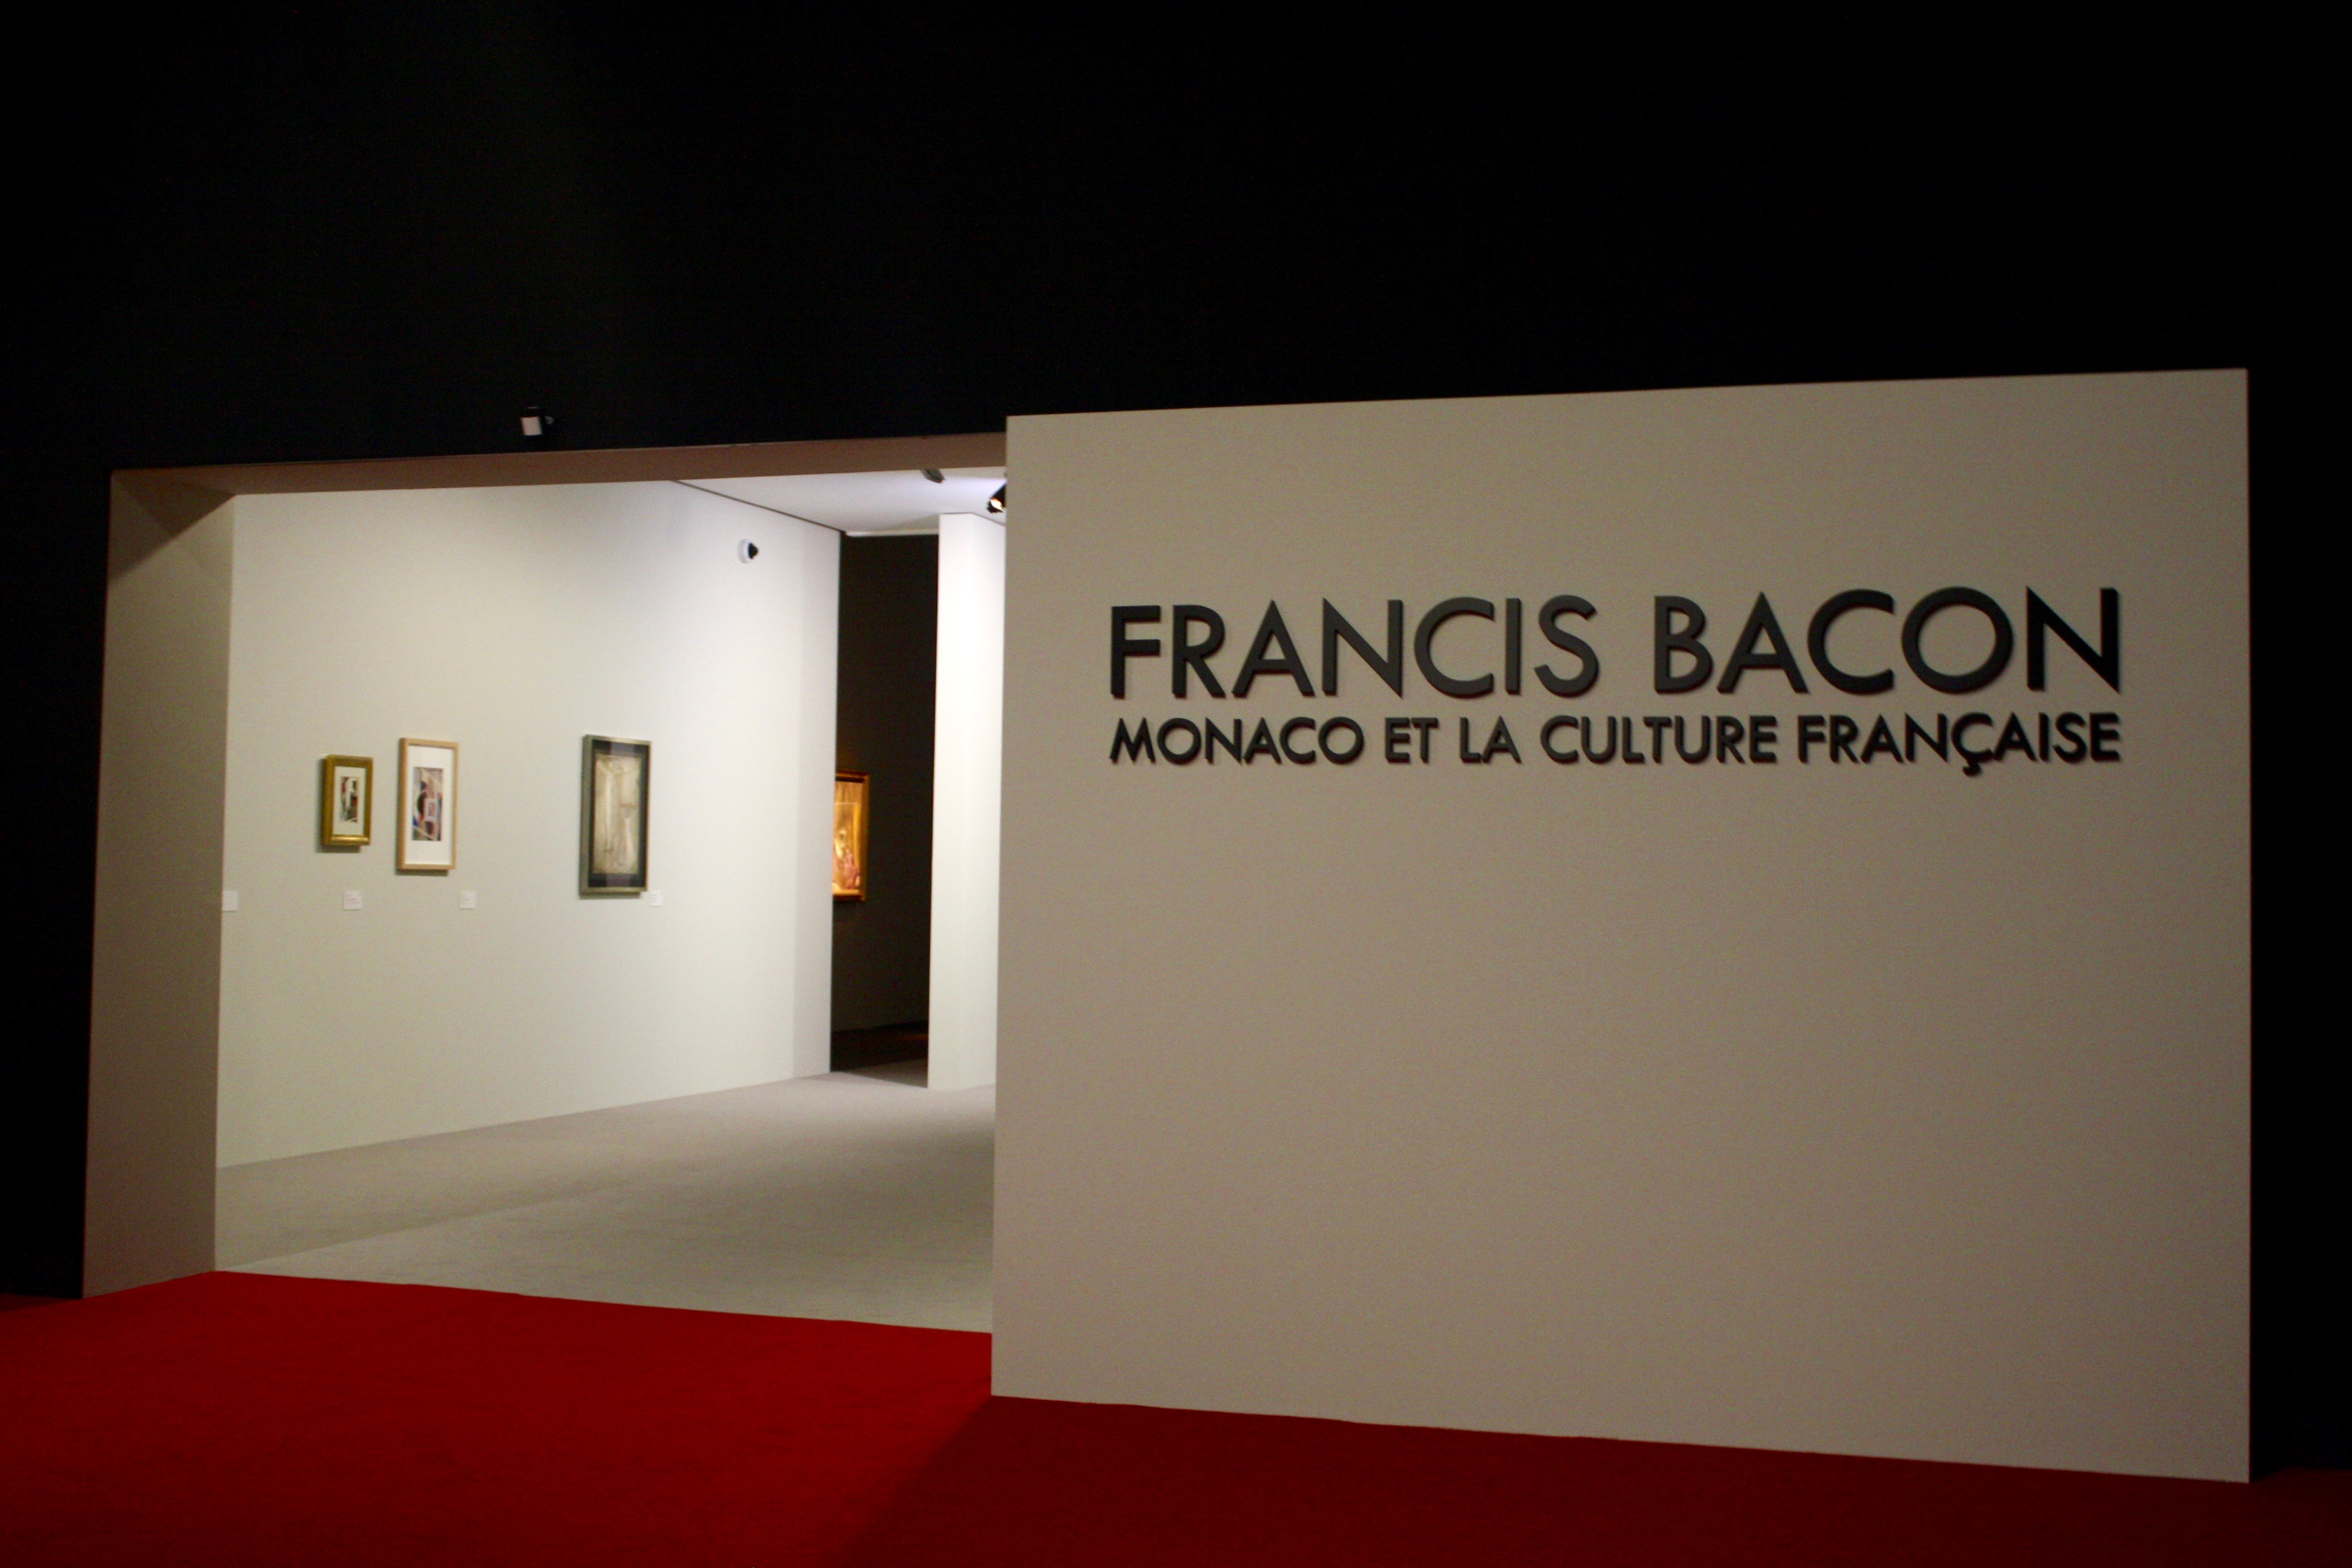 Bilan positif pour Francis Bacon avec 36 000 visiteurs !